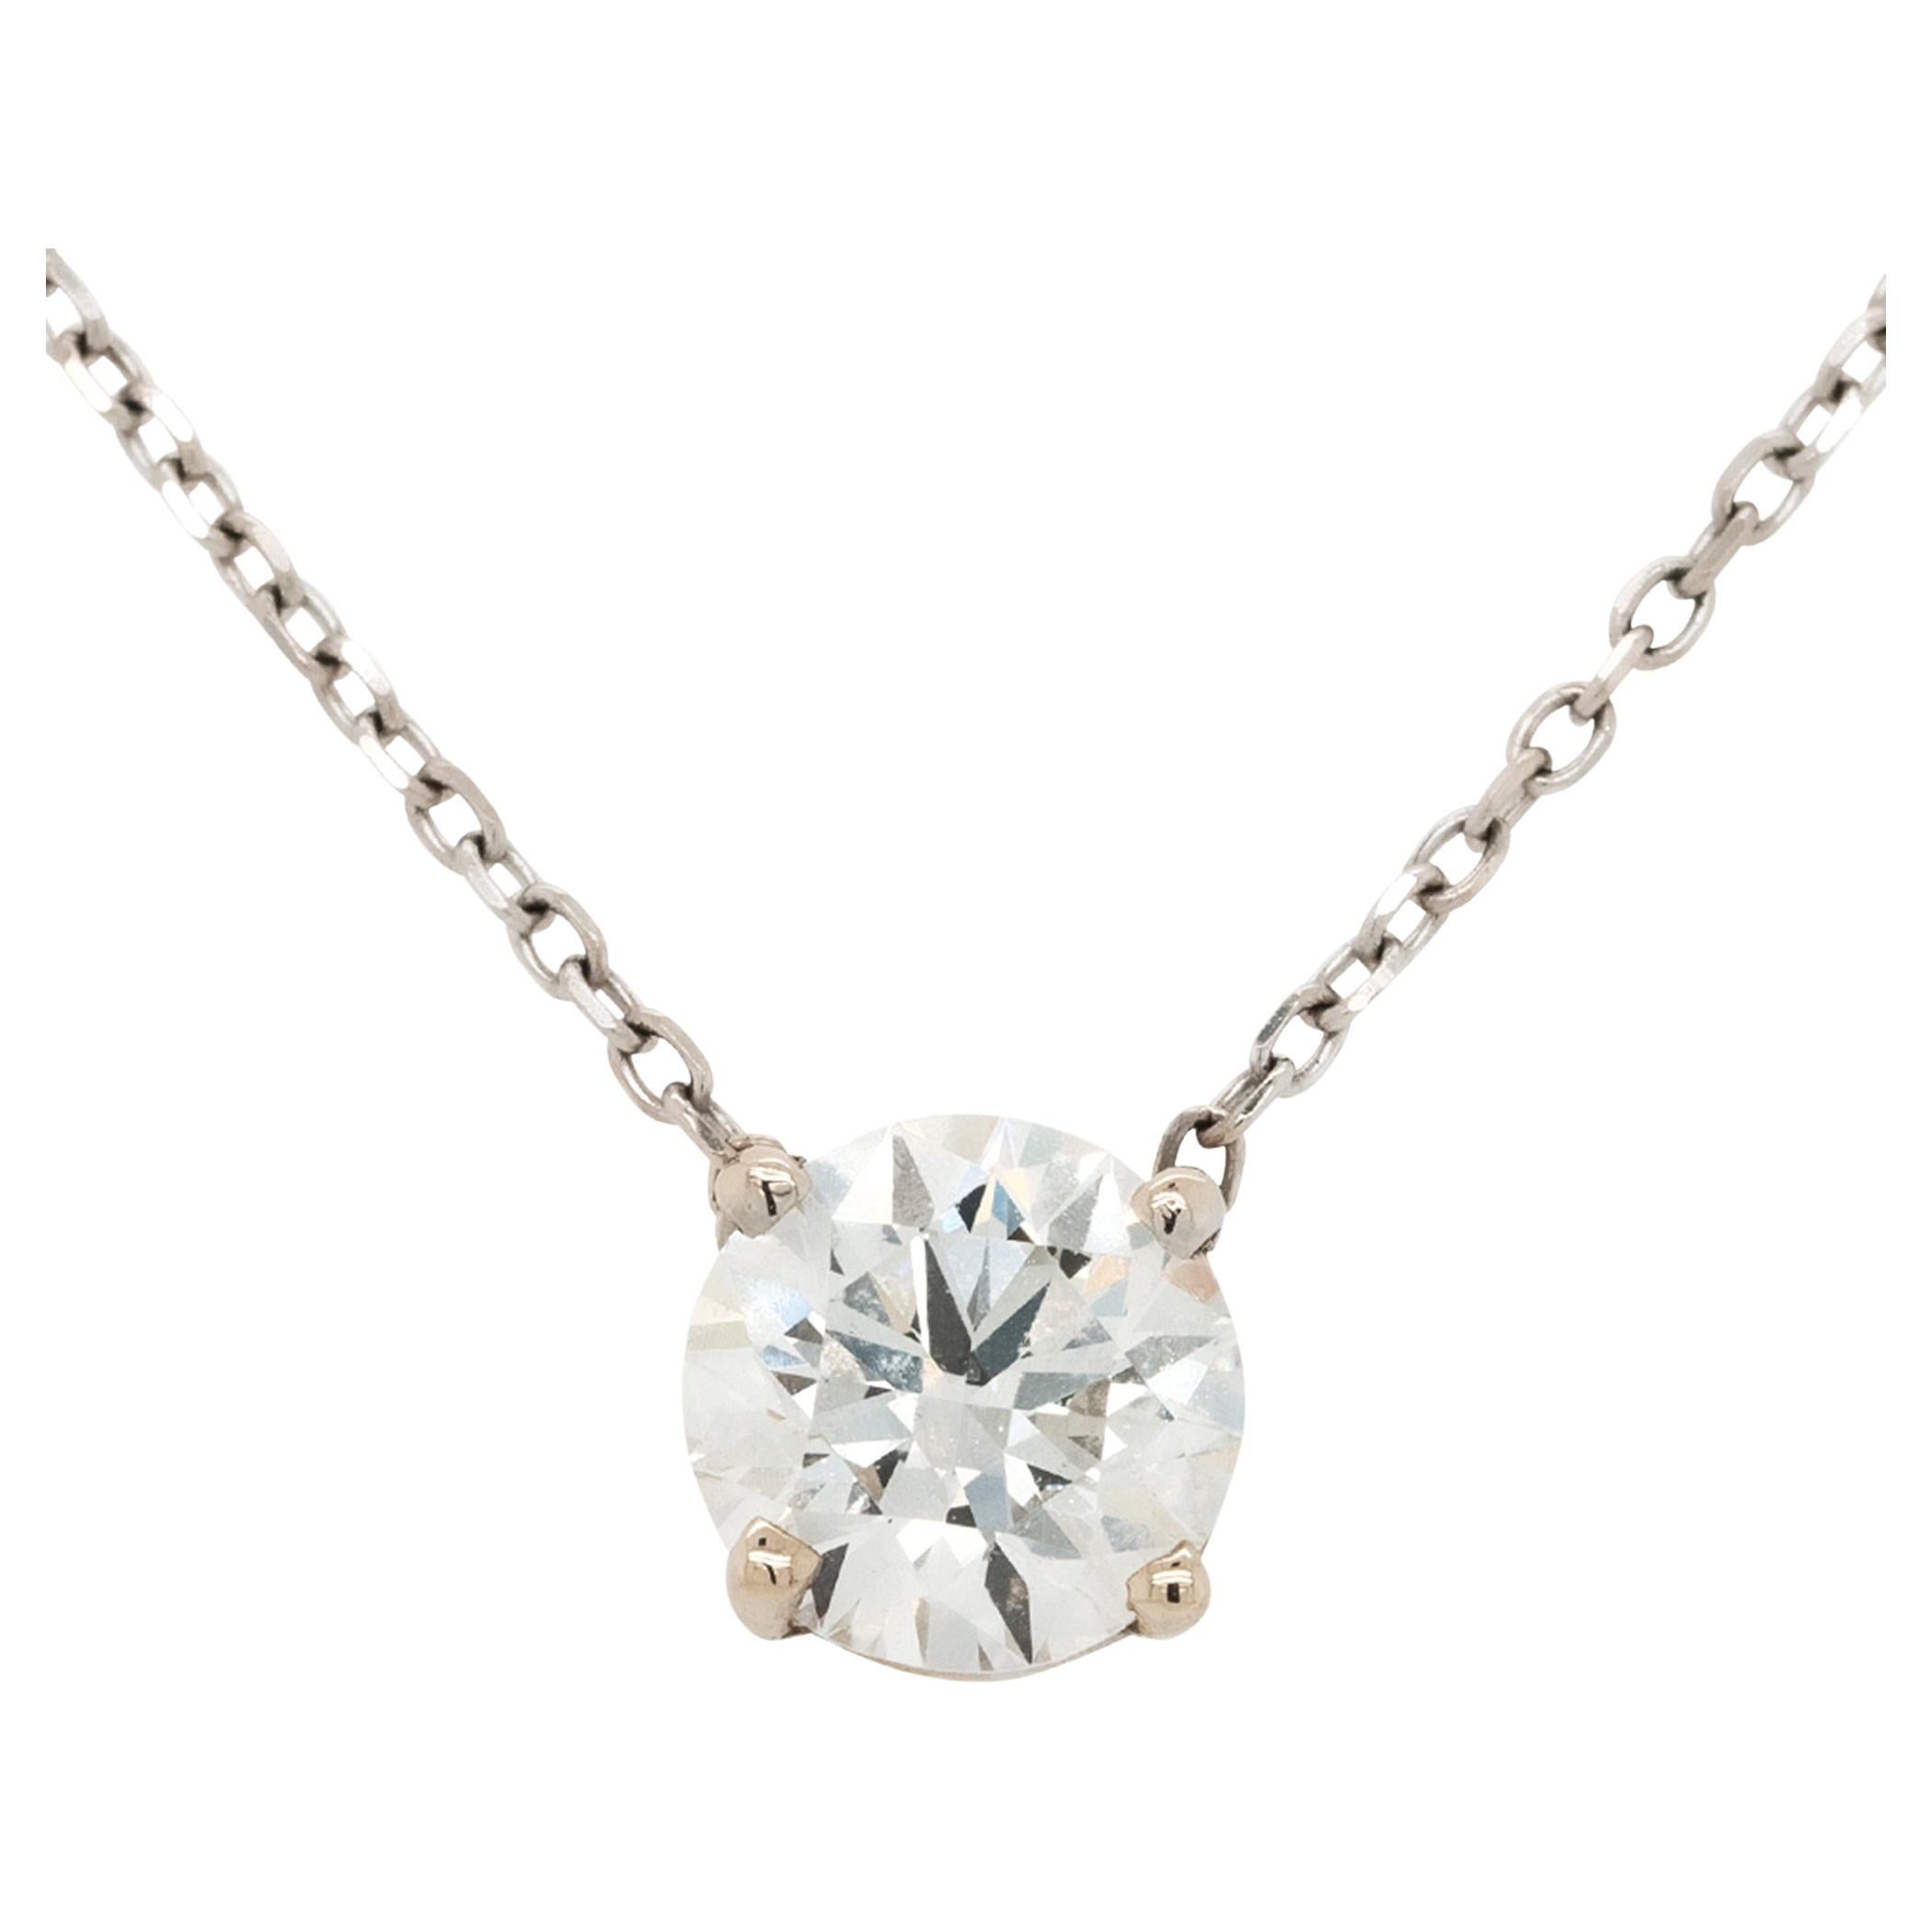 Round Brilliant GIA Diamond on White Gold Chain 14 Karat in Stock